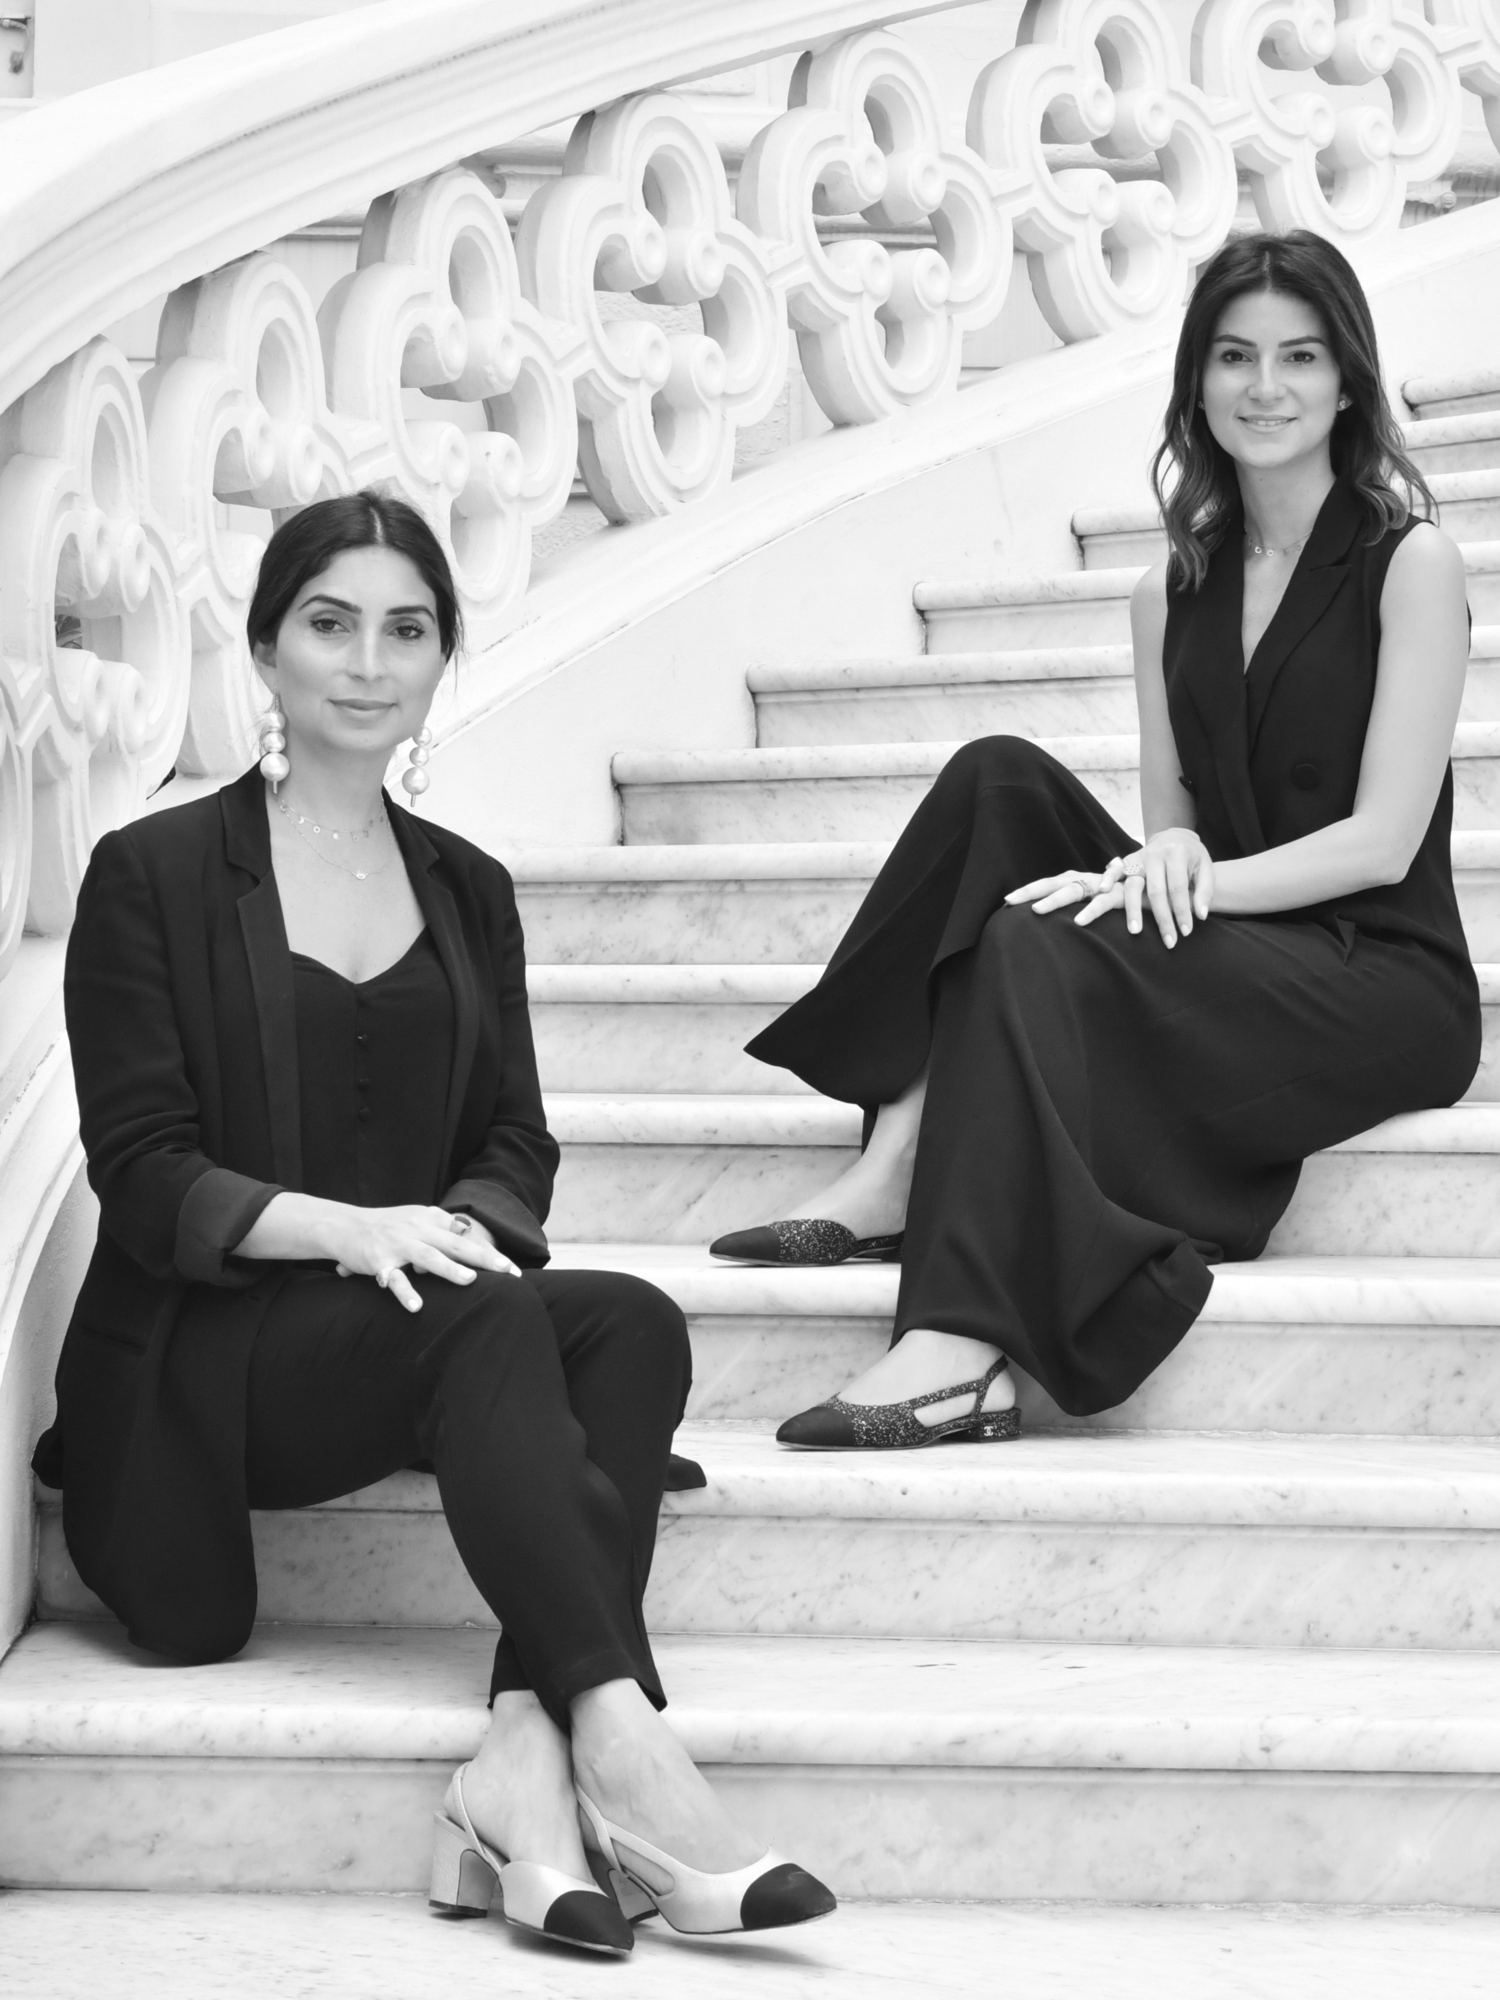 merdivenlerde oturan iki kız kardeş Nour ve Maysa Saccal Saccal Design'ı temsil ediyor. Şirket, ürün tasarımının yanı sıra iç tasarım ve mimarlık hizmetleri de vermektedir.